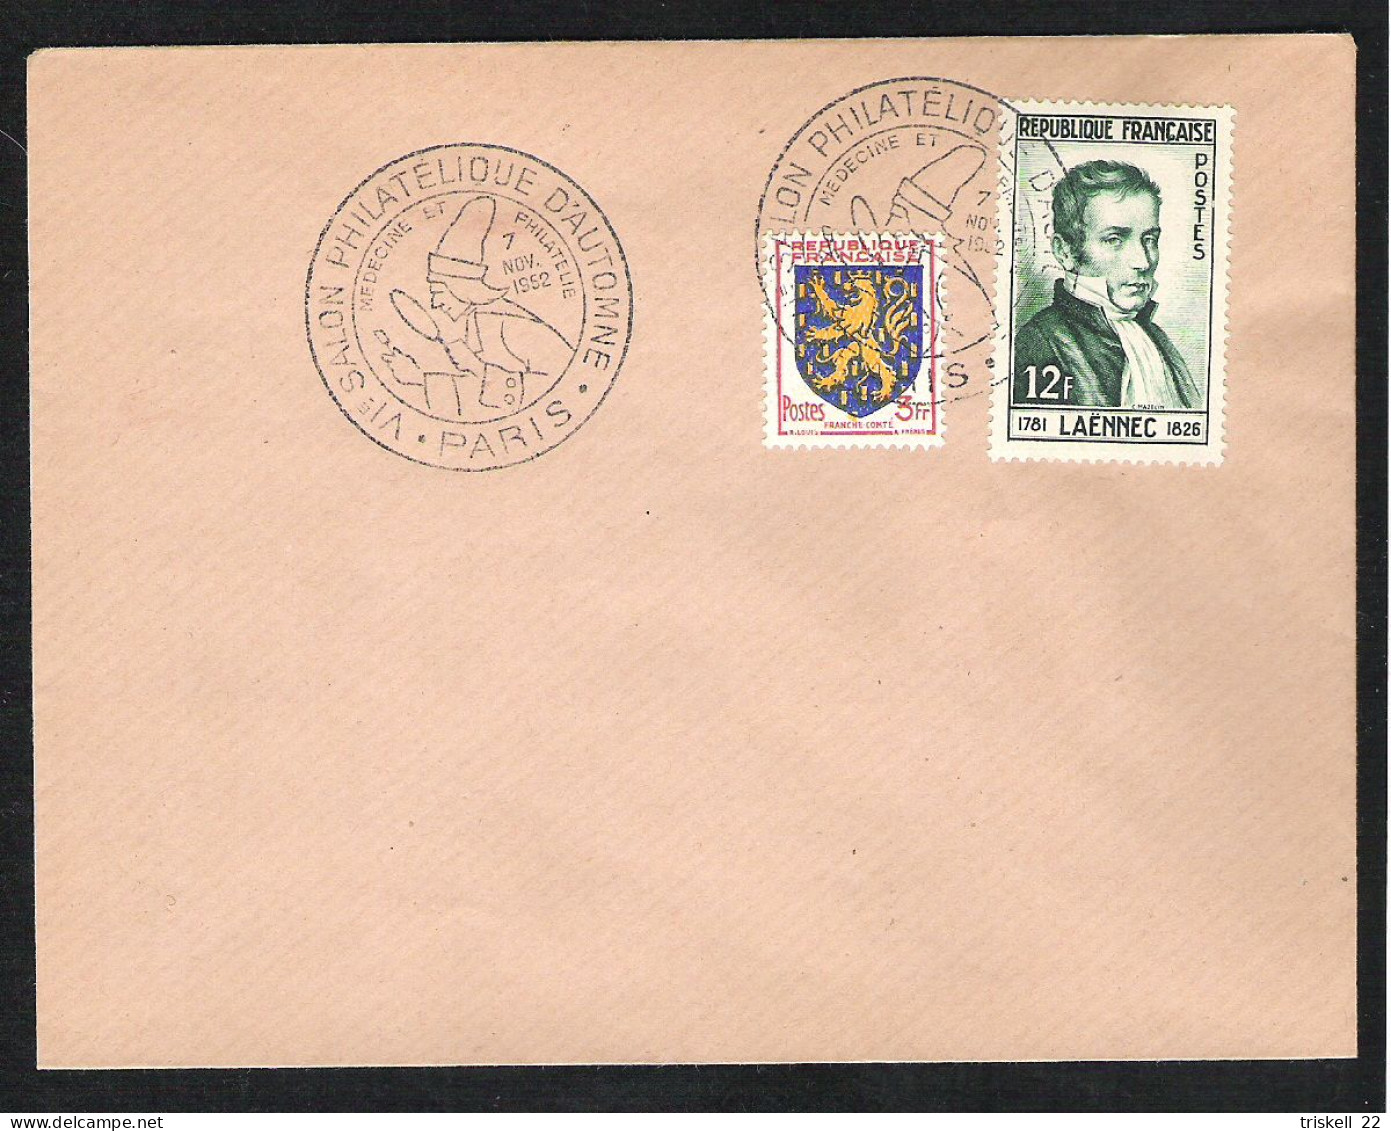 Env. Oblitération : 6ème Salon Philatélique D'automne - Médecine Et Philatélie Paris   7 Nov 1952 - Commemorative Postmarks